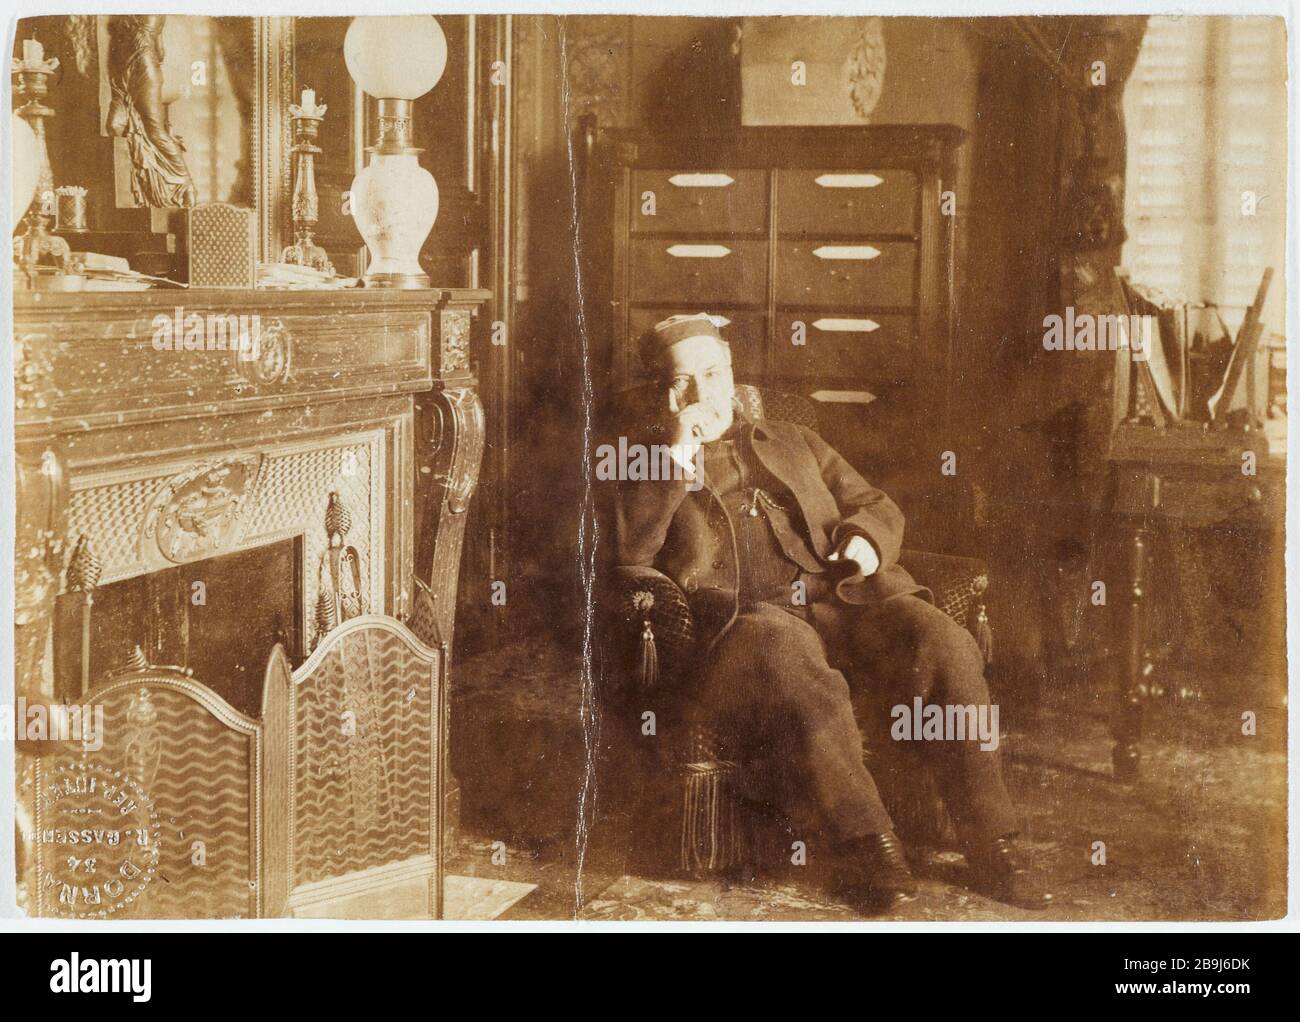 PORTRAIT OF LOUIS SHEPHERD SITTING IN HIS WHEELCHAIR 'Portrait de Louis Pasteur assis dans un fauteuil, vers 1890'. Photographie de Jules Dornac. Paris, musée Carnavalet. Stock Photo